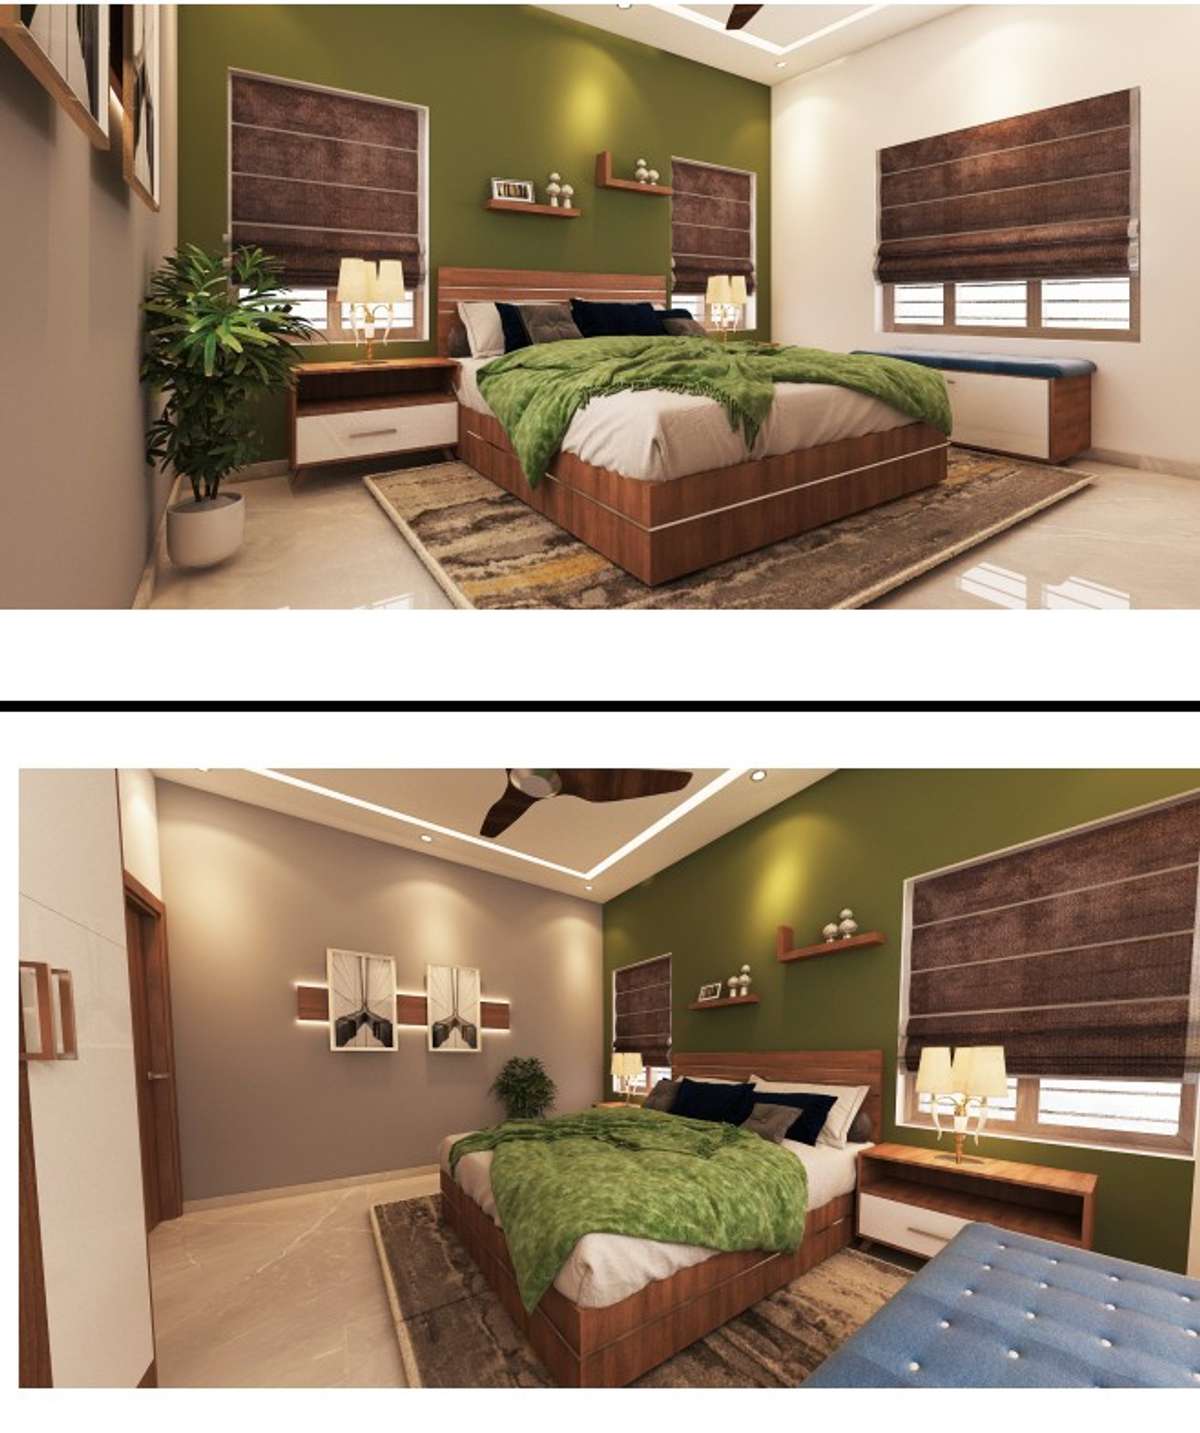 #BedroomDesigns #3d #MasterBedroom #KingsizeBedroom #homeinterior #HomeDecor #ModularKitchen #modularwardrobe #koloapp #trendingdesign #trending